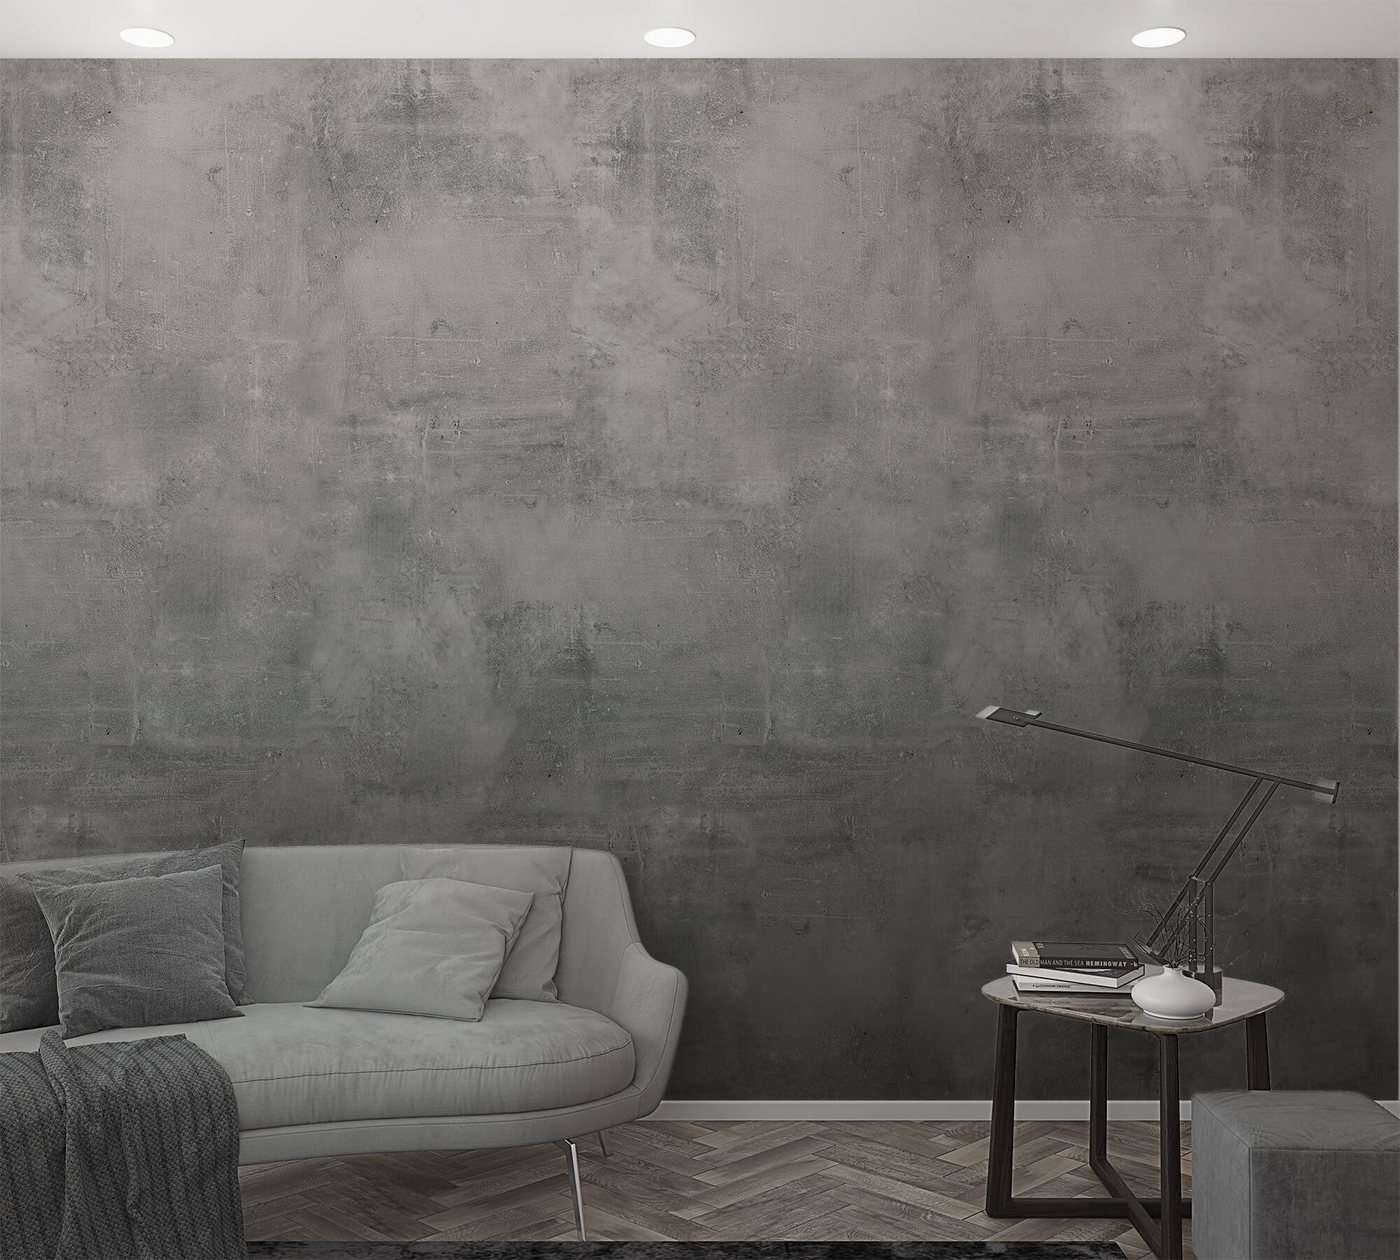 Newroom Vliestapete, [ 2,7 x 1,59m ] großzügiges Motiv - kein wiederkehrendes Muster - nahtlos große Flächen möglich - Fototapete Wandbild Beton Zement Stein Made in Germany von Newroom